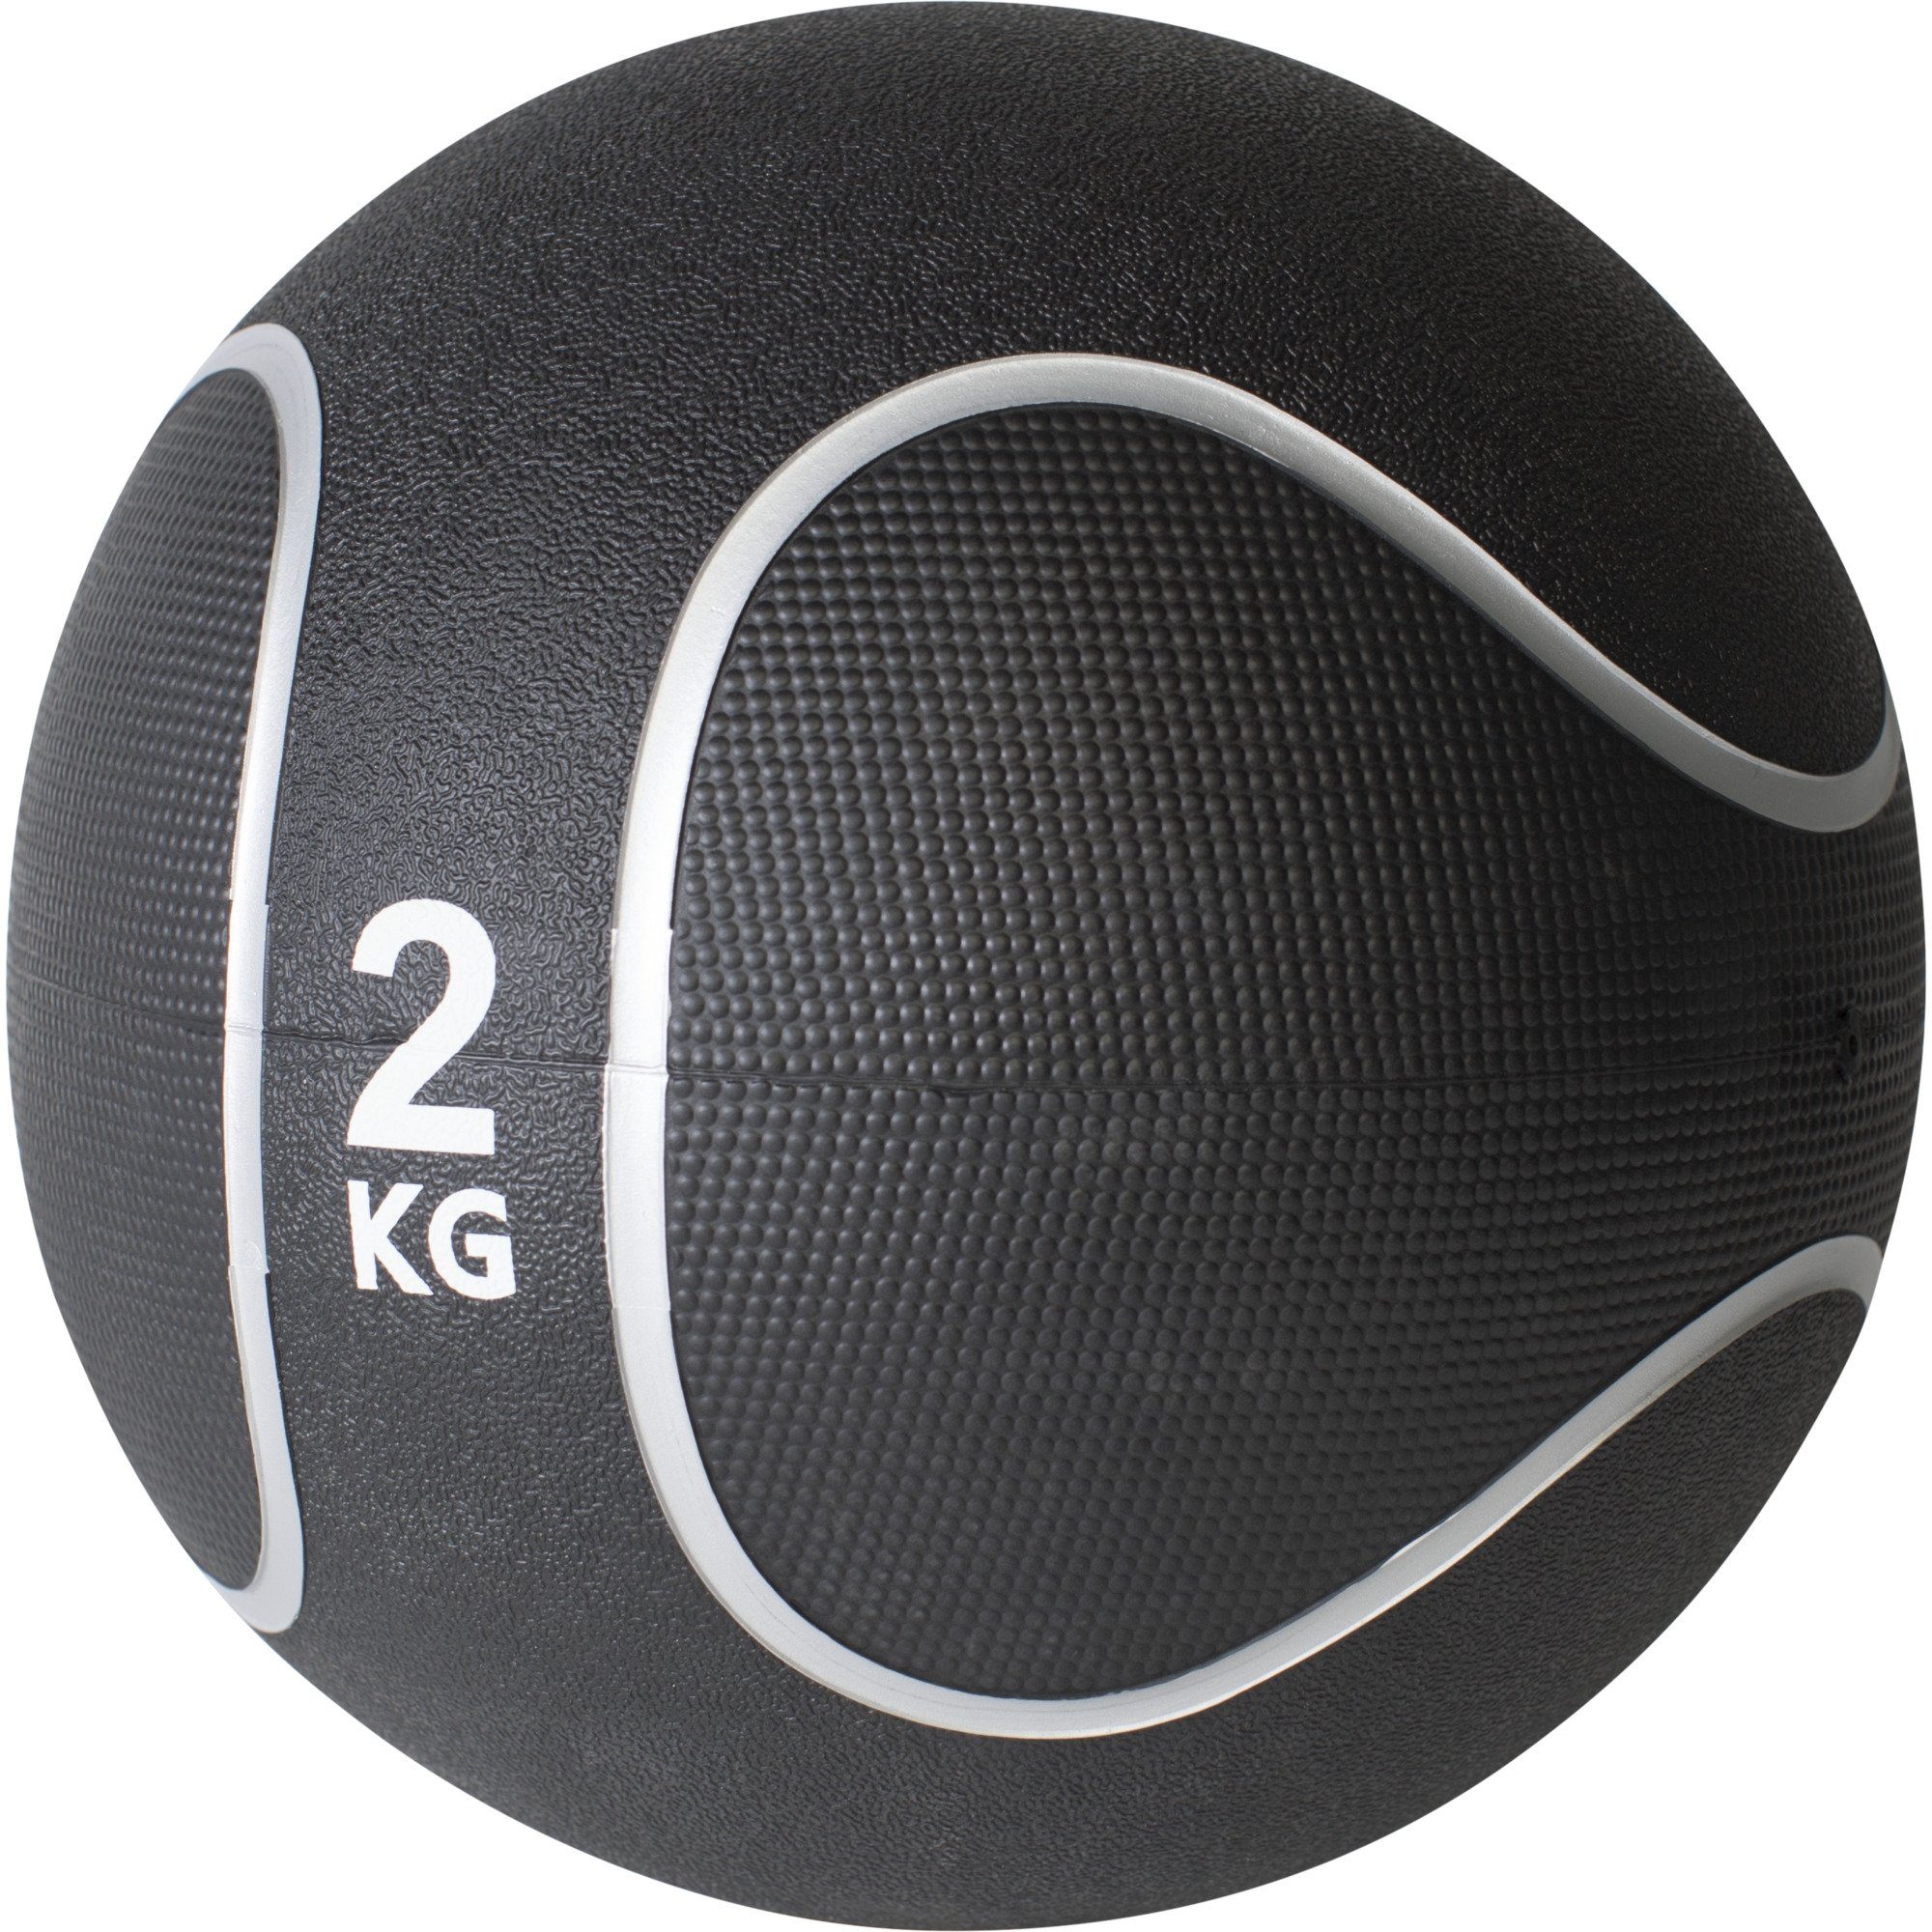 GORILLA SPORTS Medizinball Einzeln / Set, Ø 23 oder 29 cm, rutschfest, aus Gummi, Fitnessball 2 KG